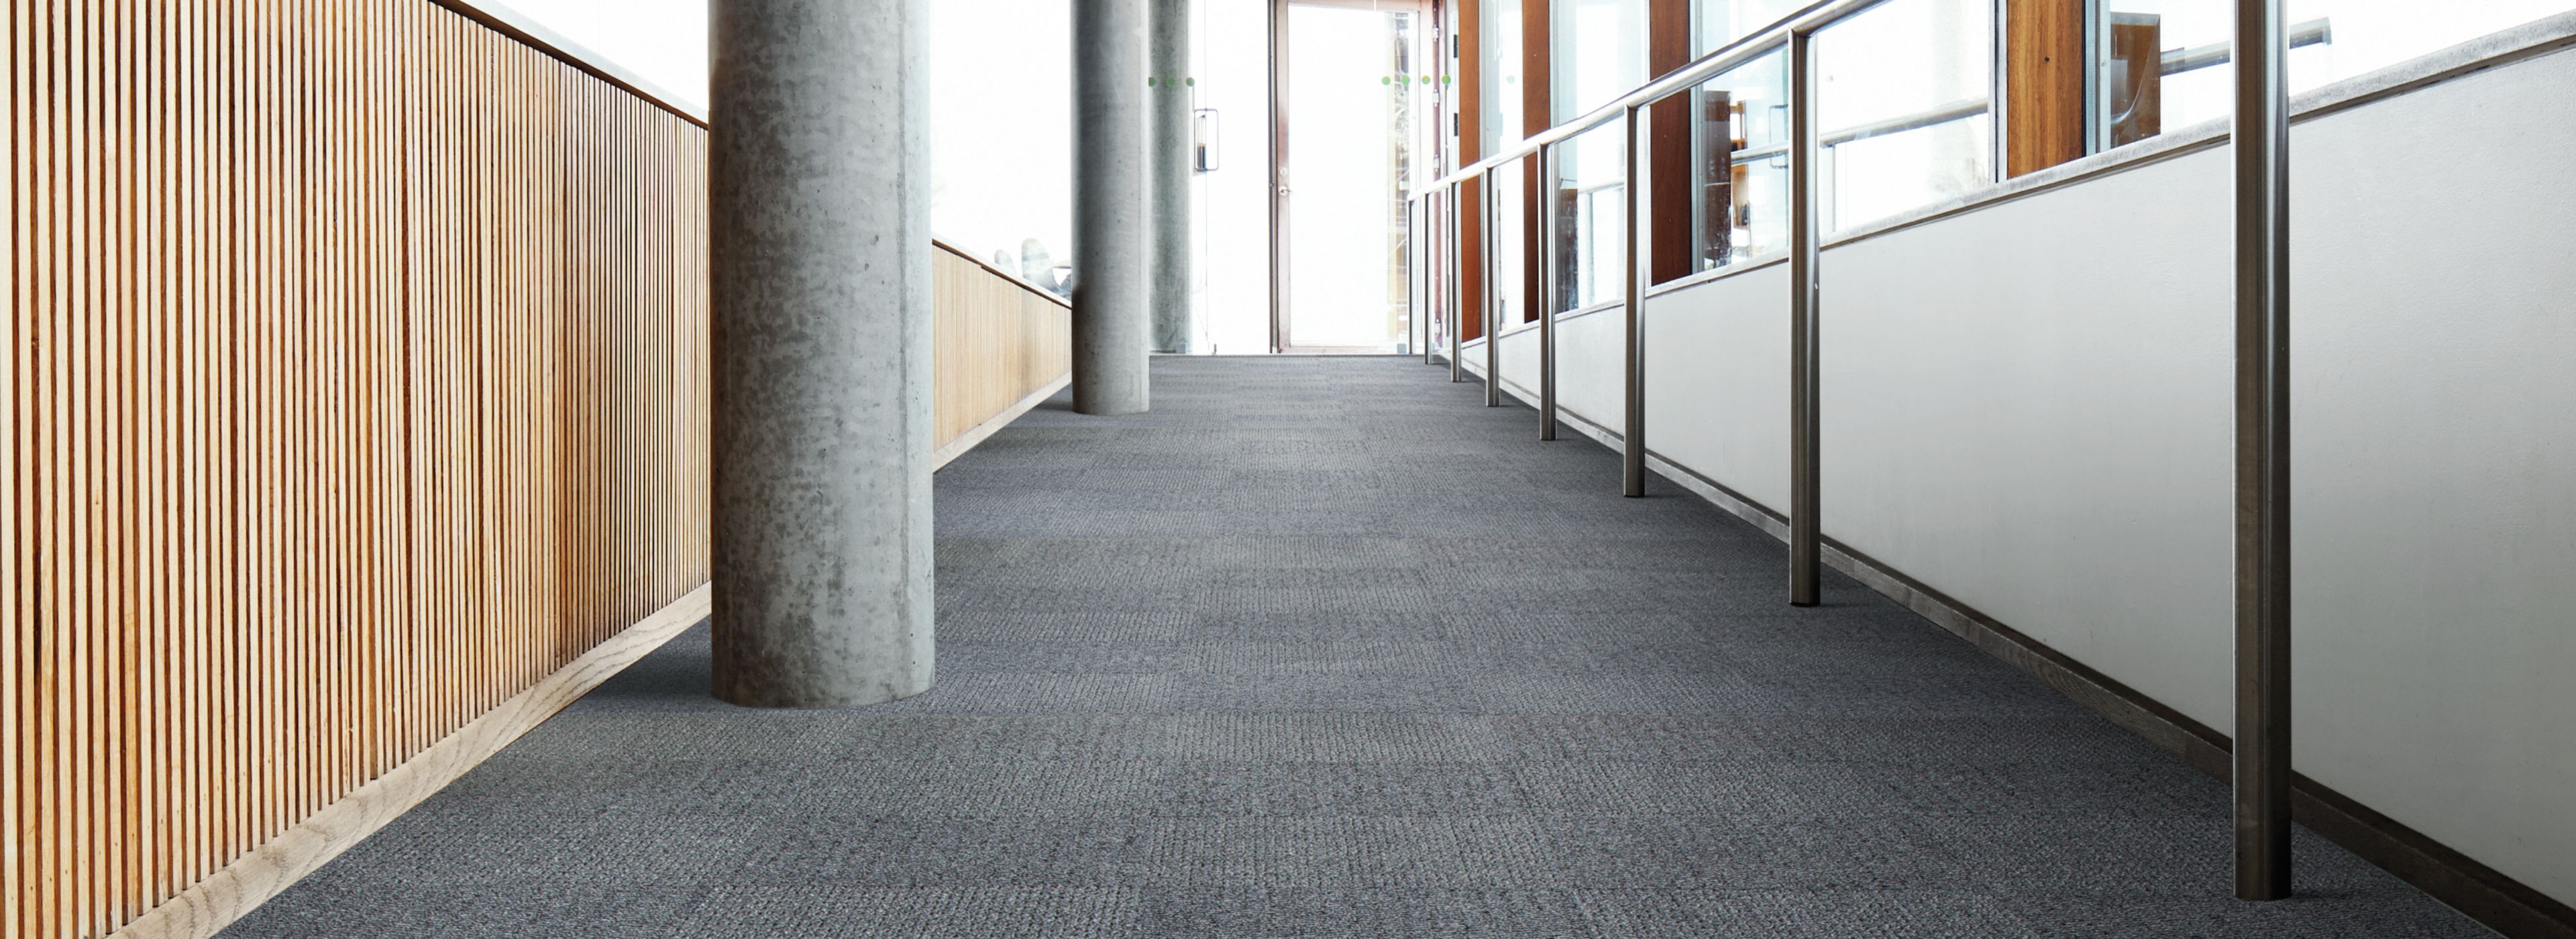 Interface SR799 carpet tile in a hallway setting with columns numéro d’image 1